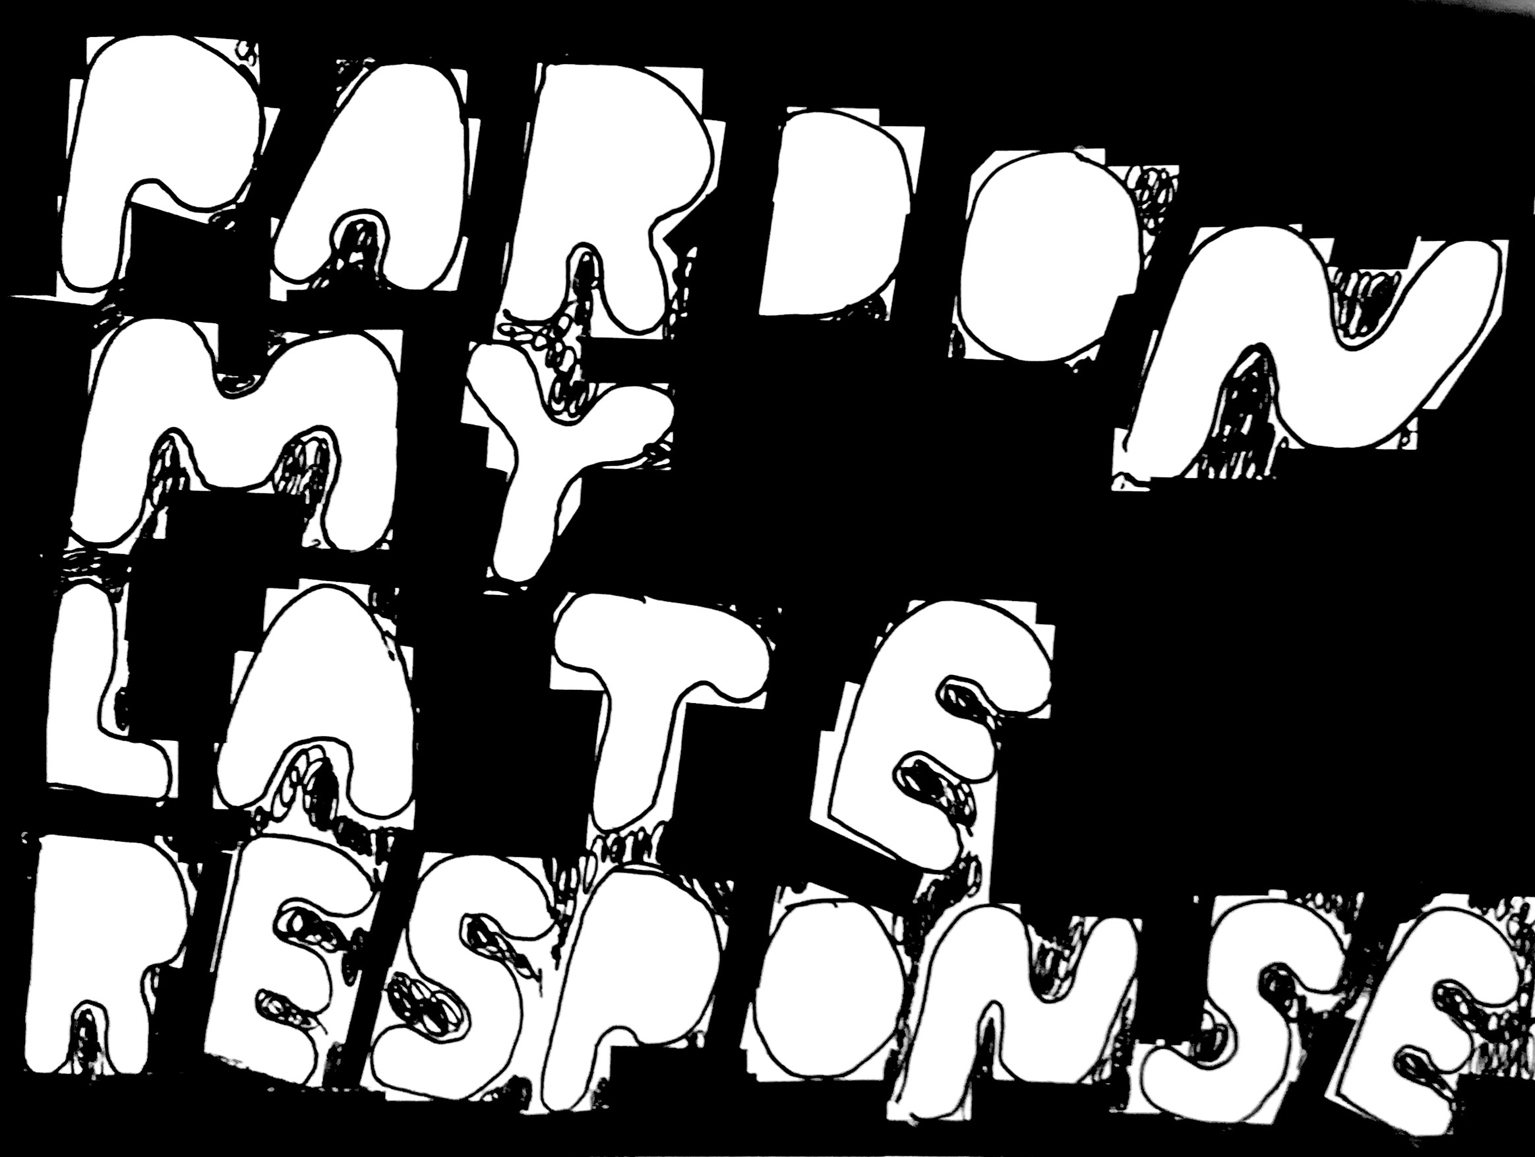 Die Wörter „Pardon my late response“ in weißer Farbe auf schwarzem Grund